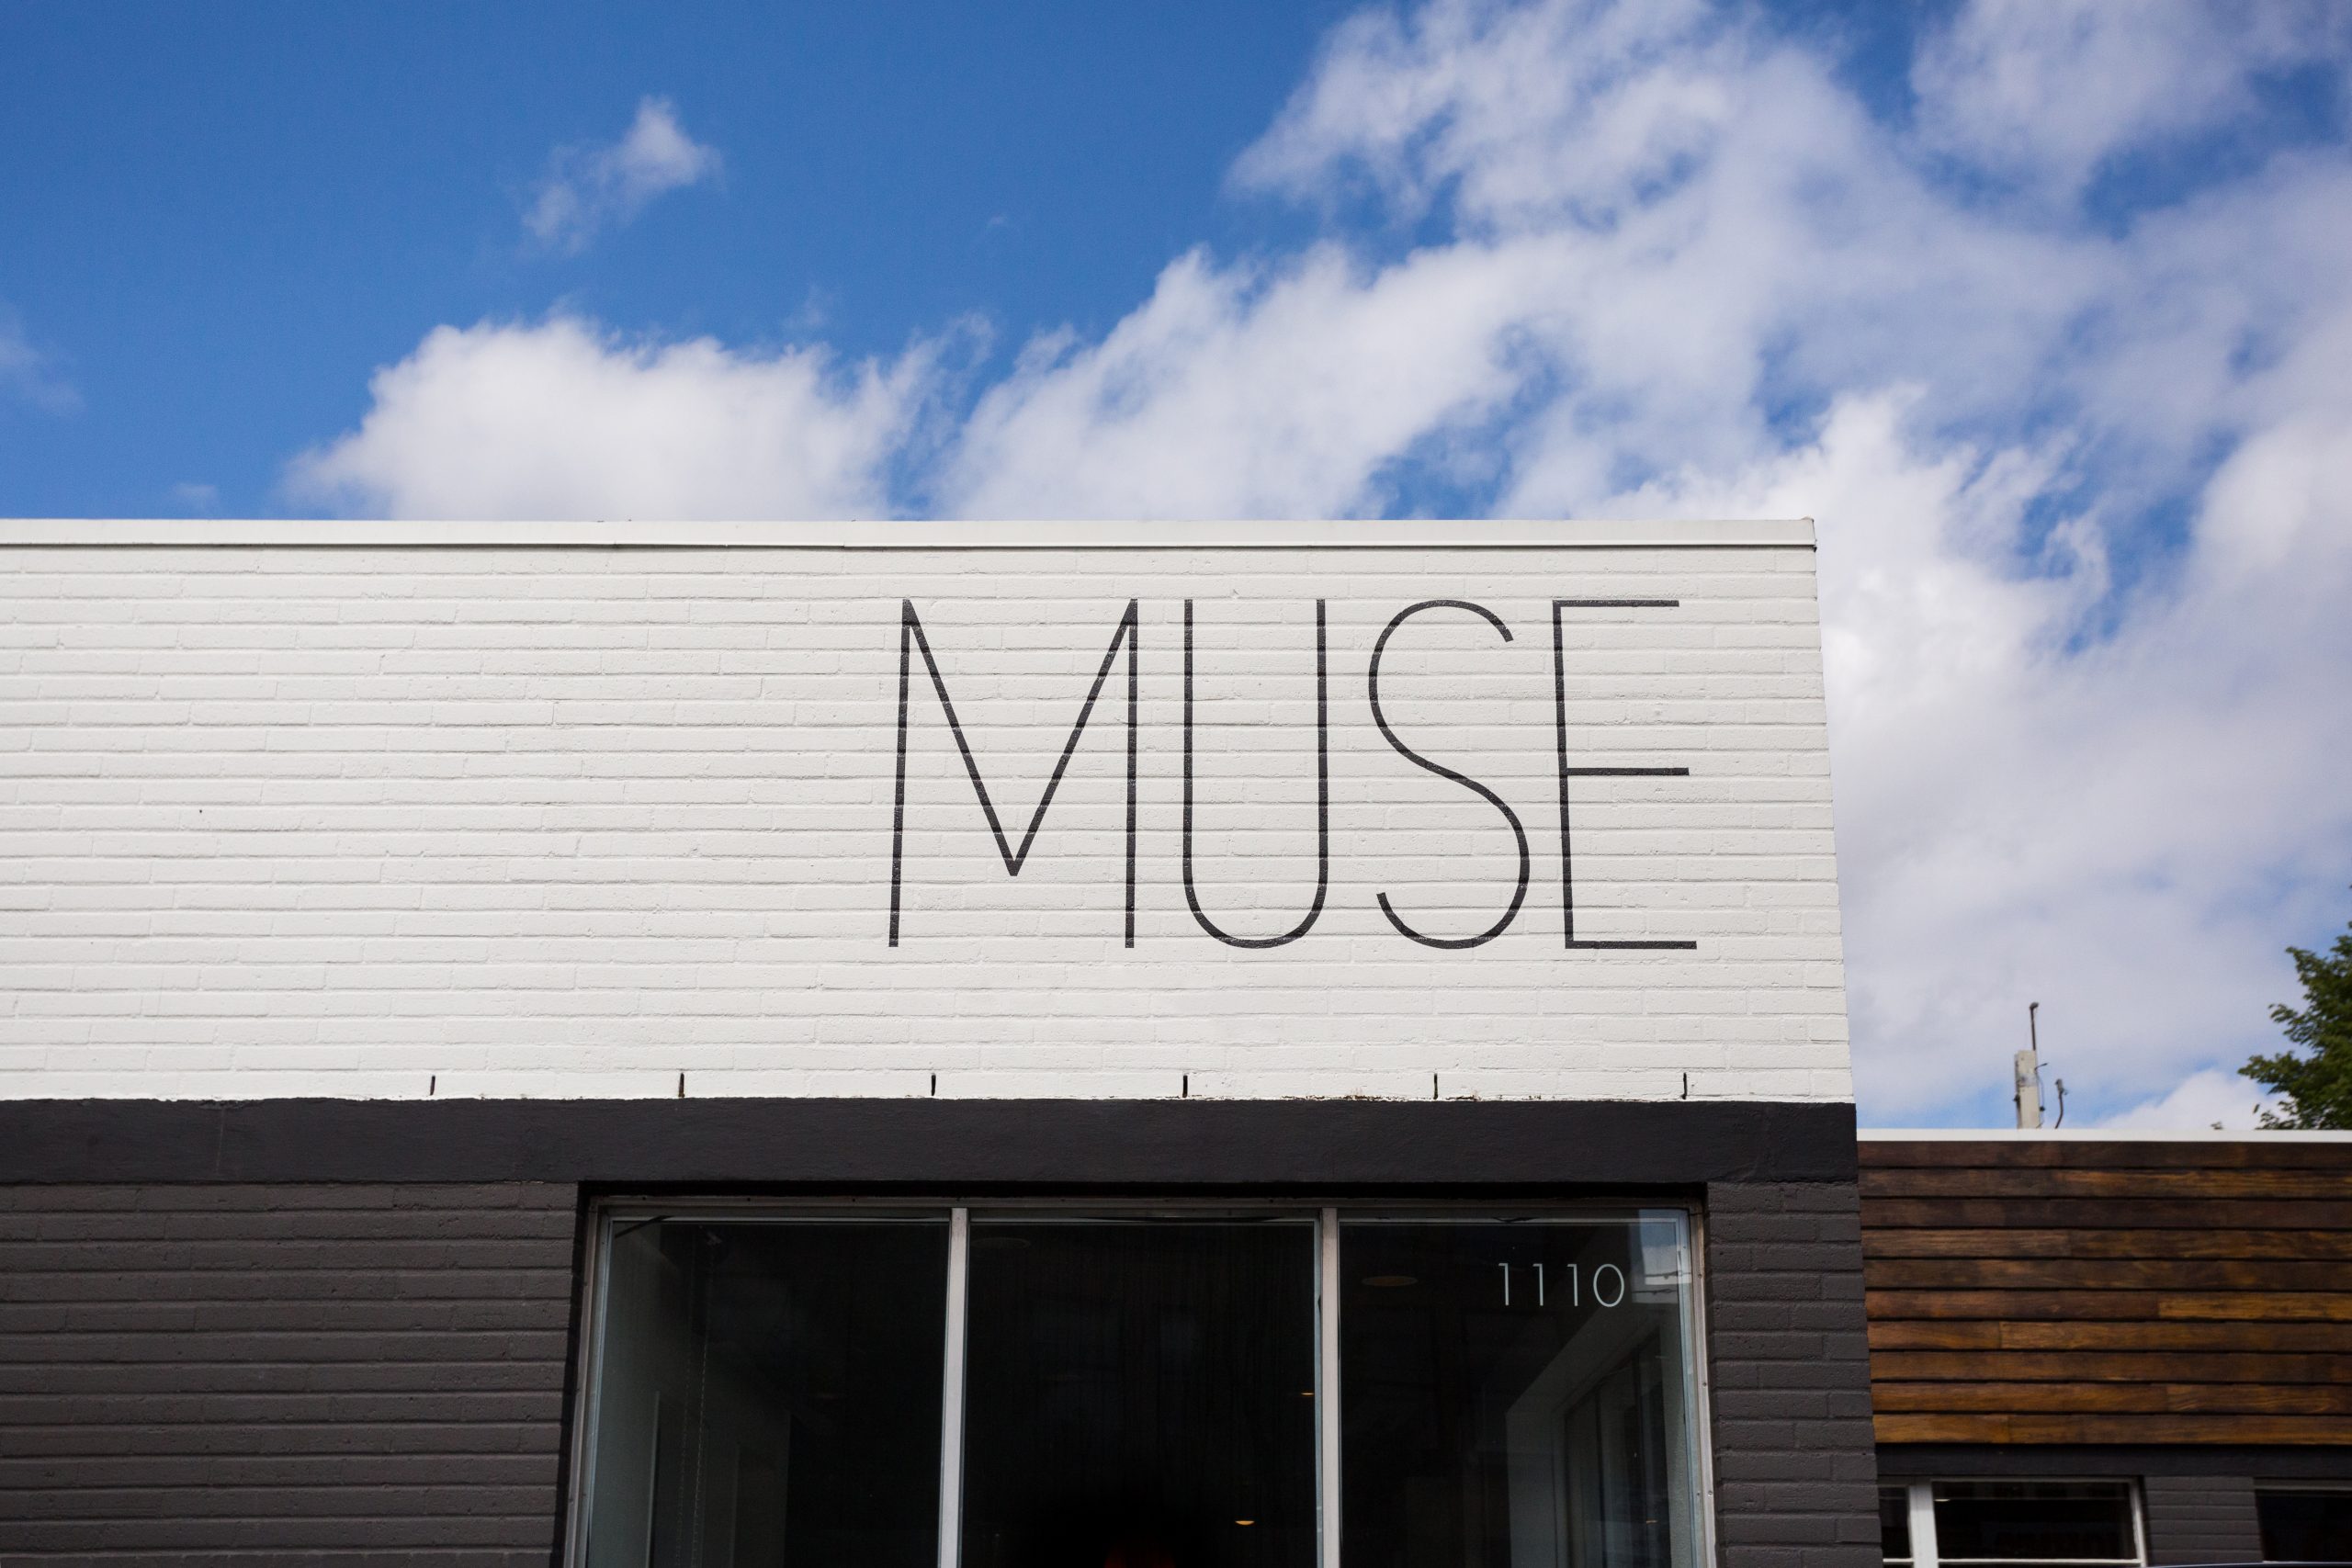 Muse Hair Design is a hair design studio